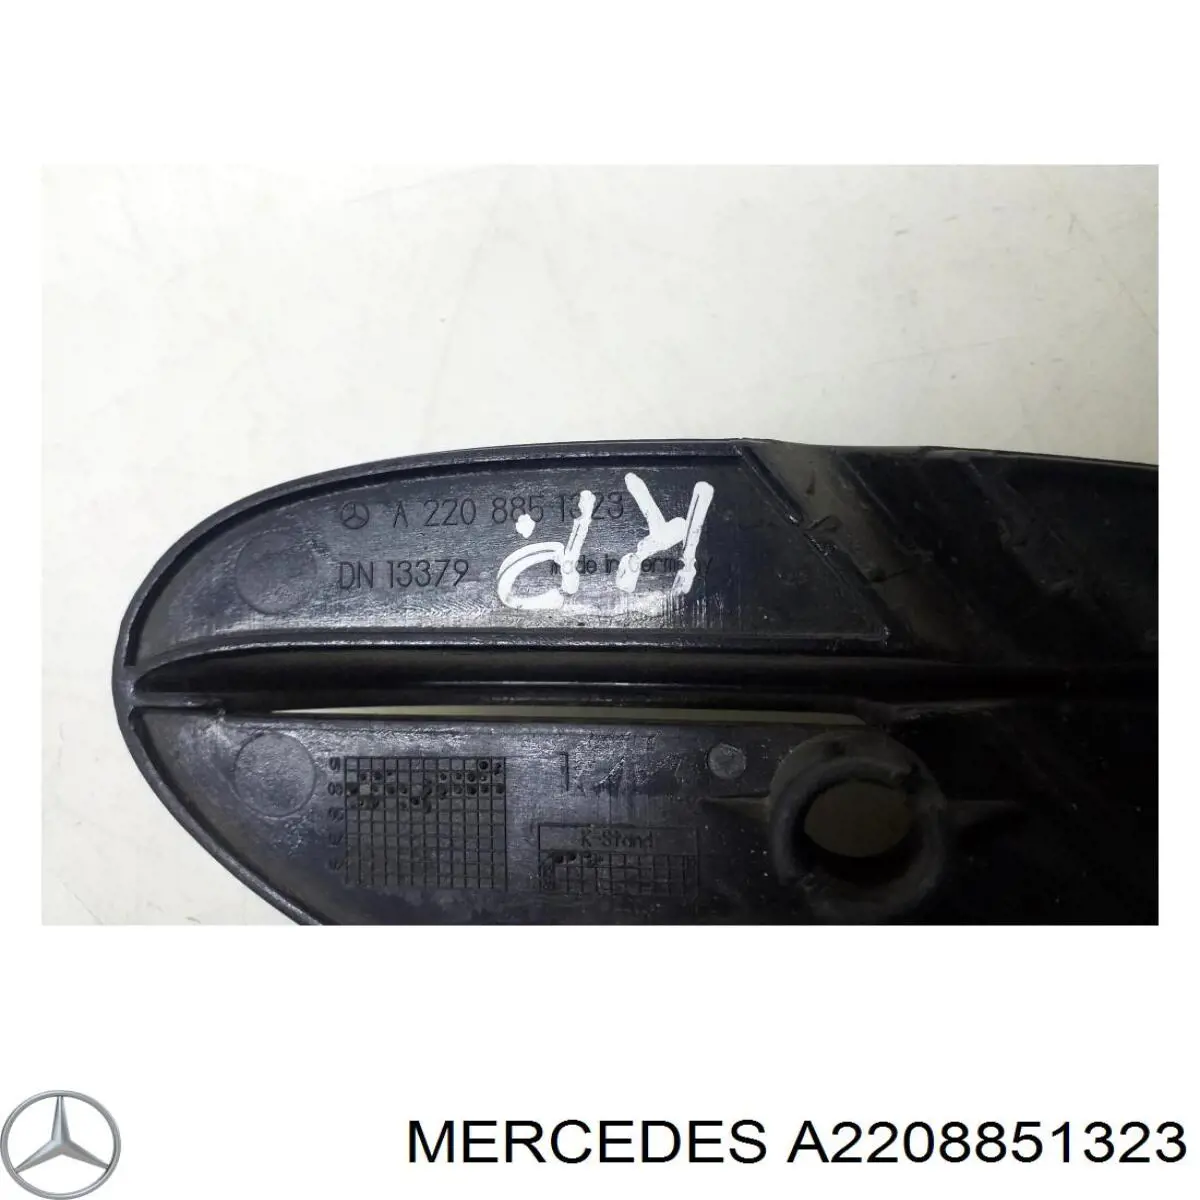 A2208851323 Mercedes rejilla de ventilación, parachoques trasero, izquierda